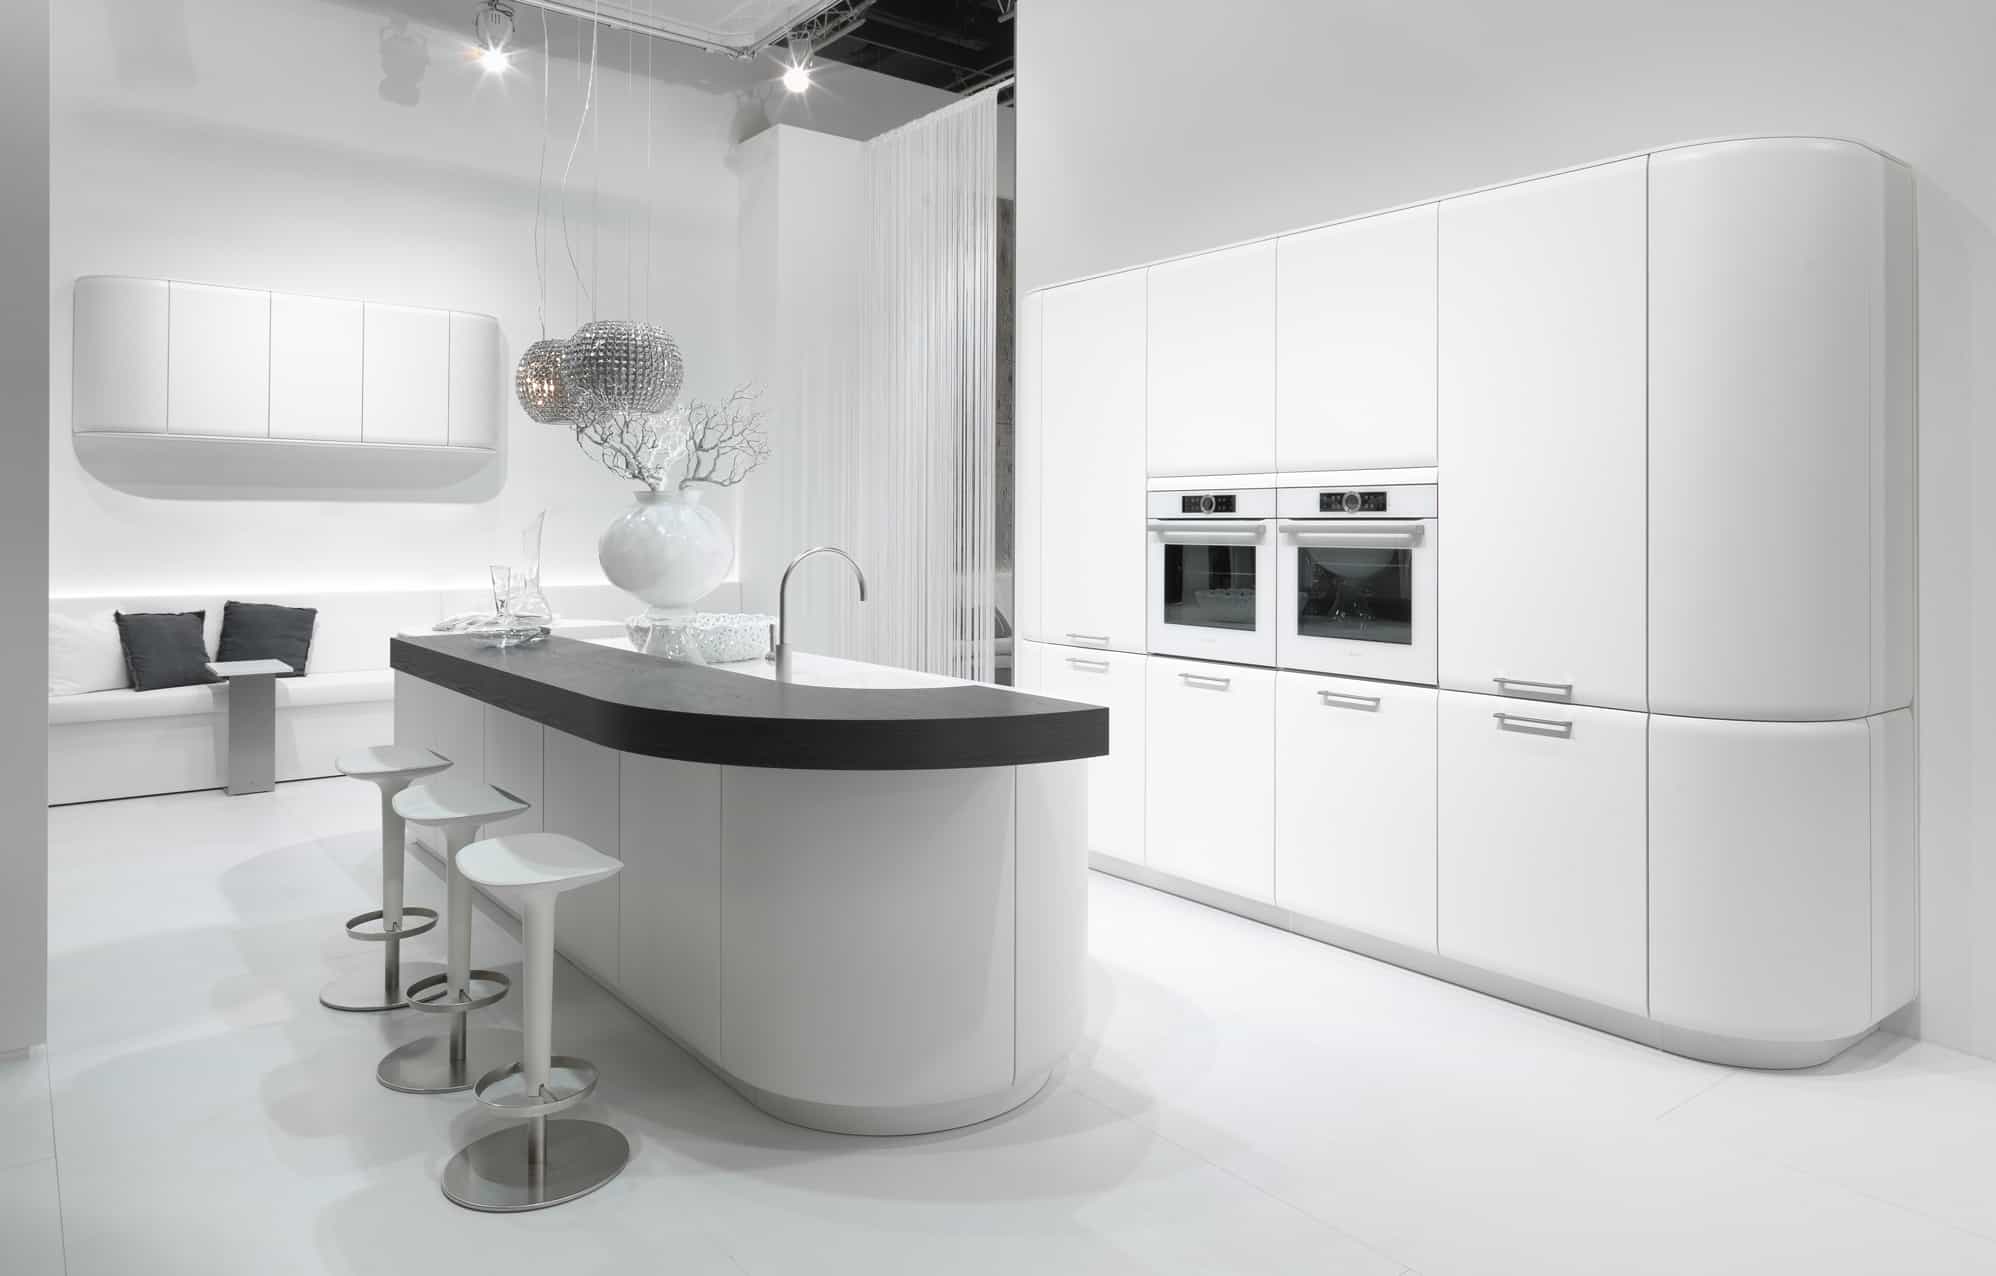 Küchenstudio Eine moderne Küche mit einer weißen Insel und Hockern.